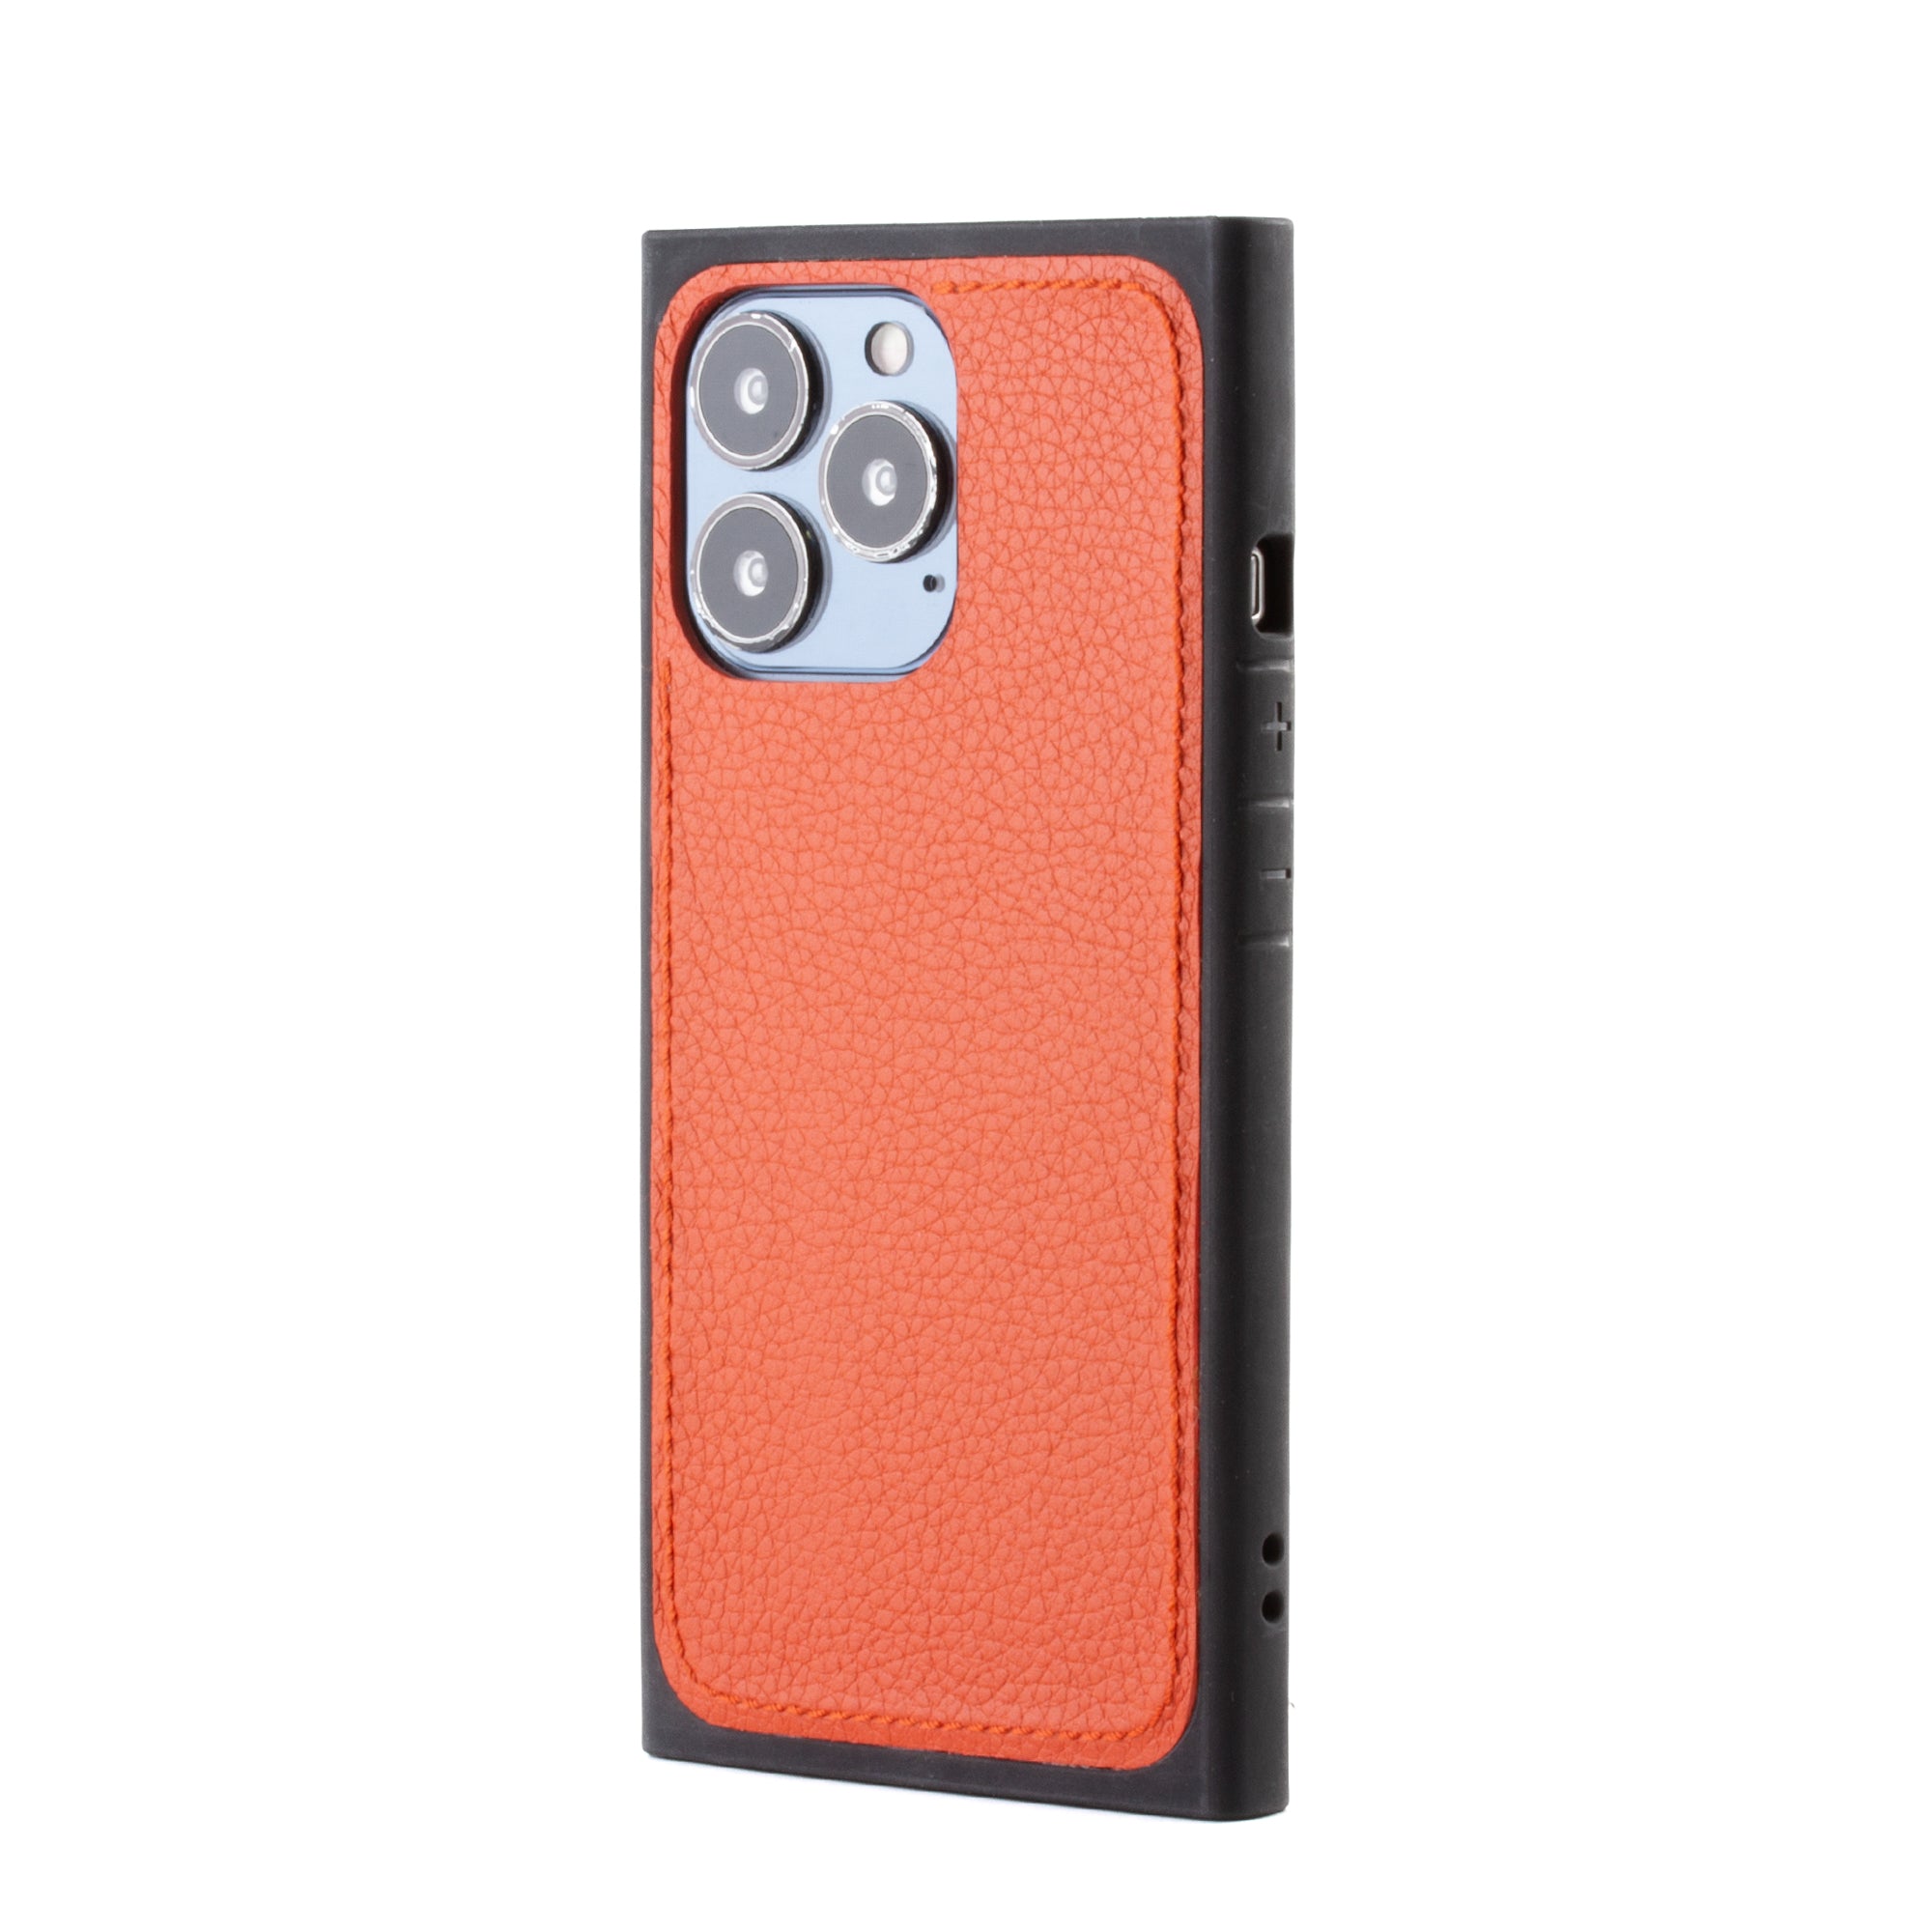 Vente exclusive - Coque "Square case" cuir pour iPhone 13 Pro - Buffle Orange